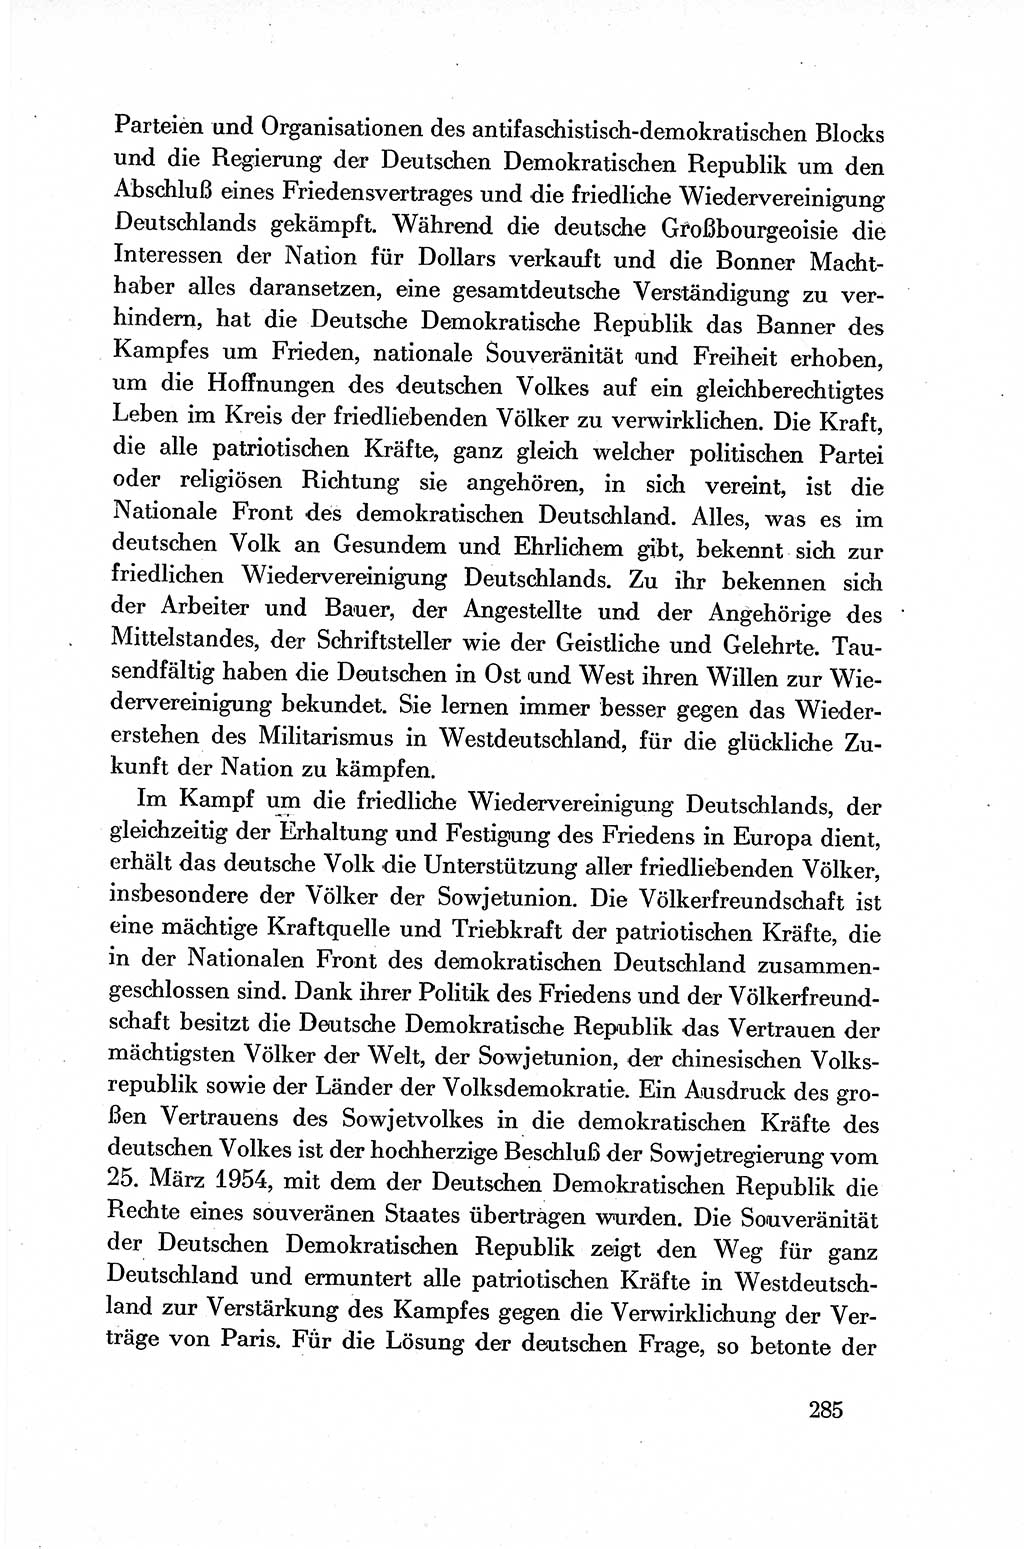 Dokumente der Sozialistischen Einheitspartei Deutschlands (SED) [Deutsche Demokratische Republik (DDR)] 1954-1955, Seite 285 (Dok. SED DDR 1954-1955, S. 285)